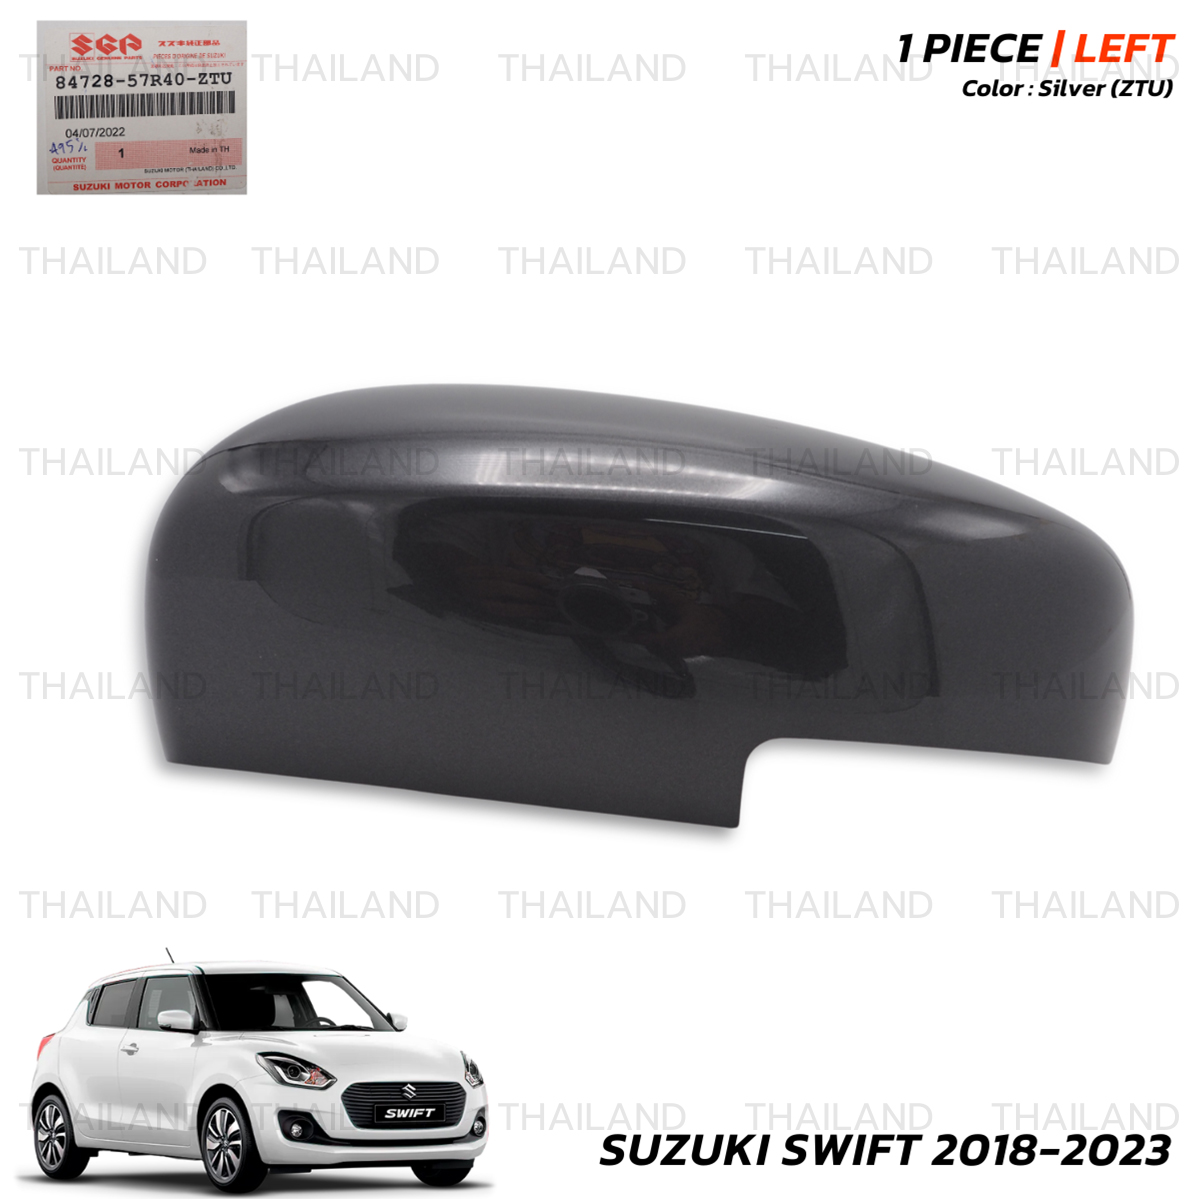 Suzuki Swift Door Mirror Cover RH (wi, Suzuki Exterior Styling